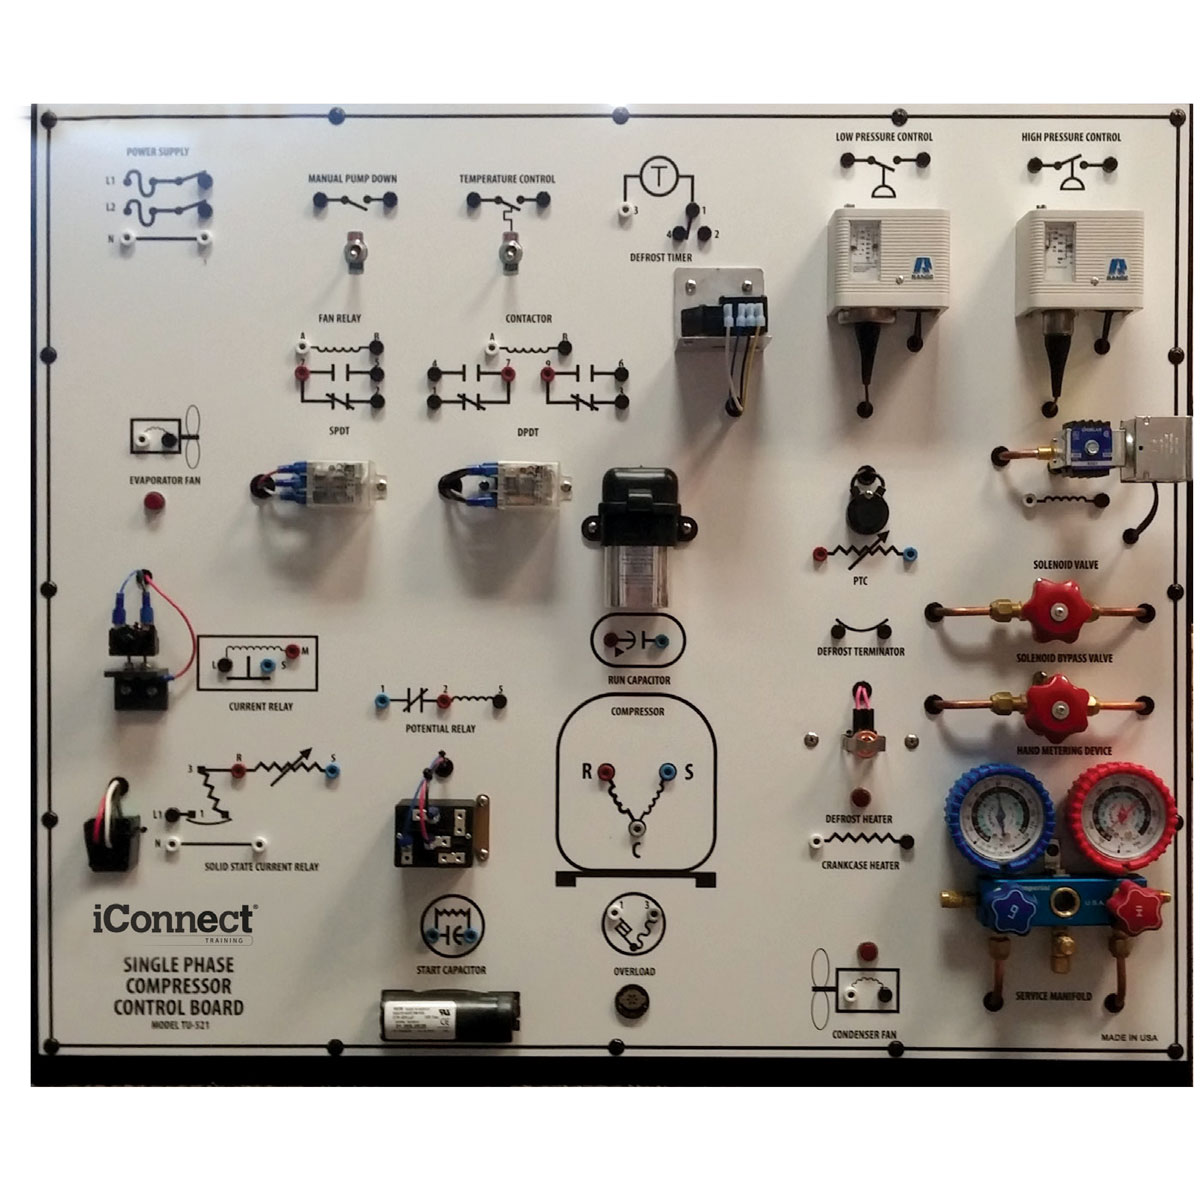 Single Phase Compressor Control Board TU-521